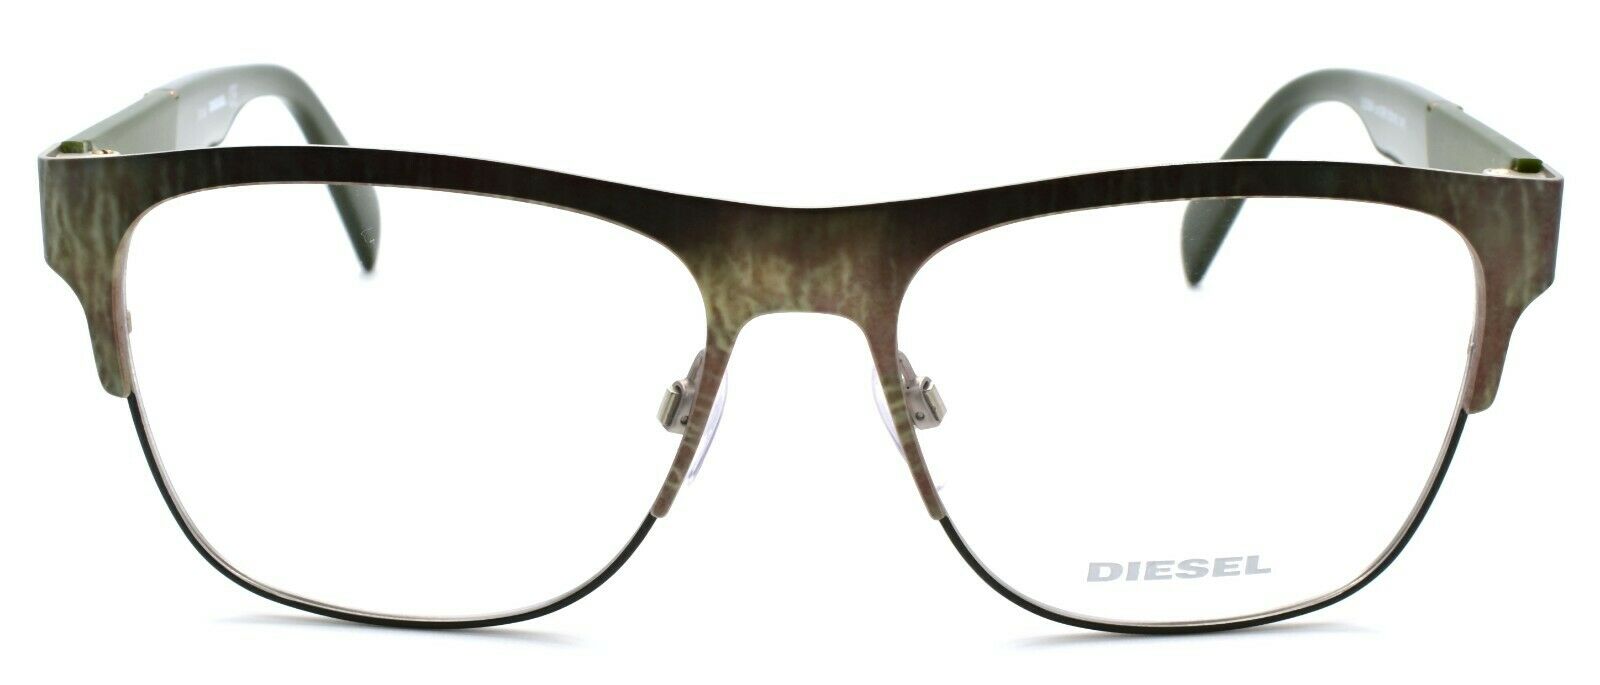 2-Diesel DL5094 098 Men's Eyeglasses Frames 55-16-145 Tarnished Green-664689632565-IKSpecs